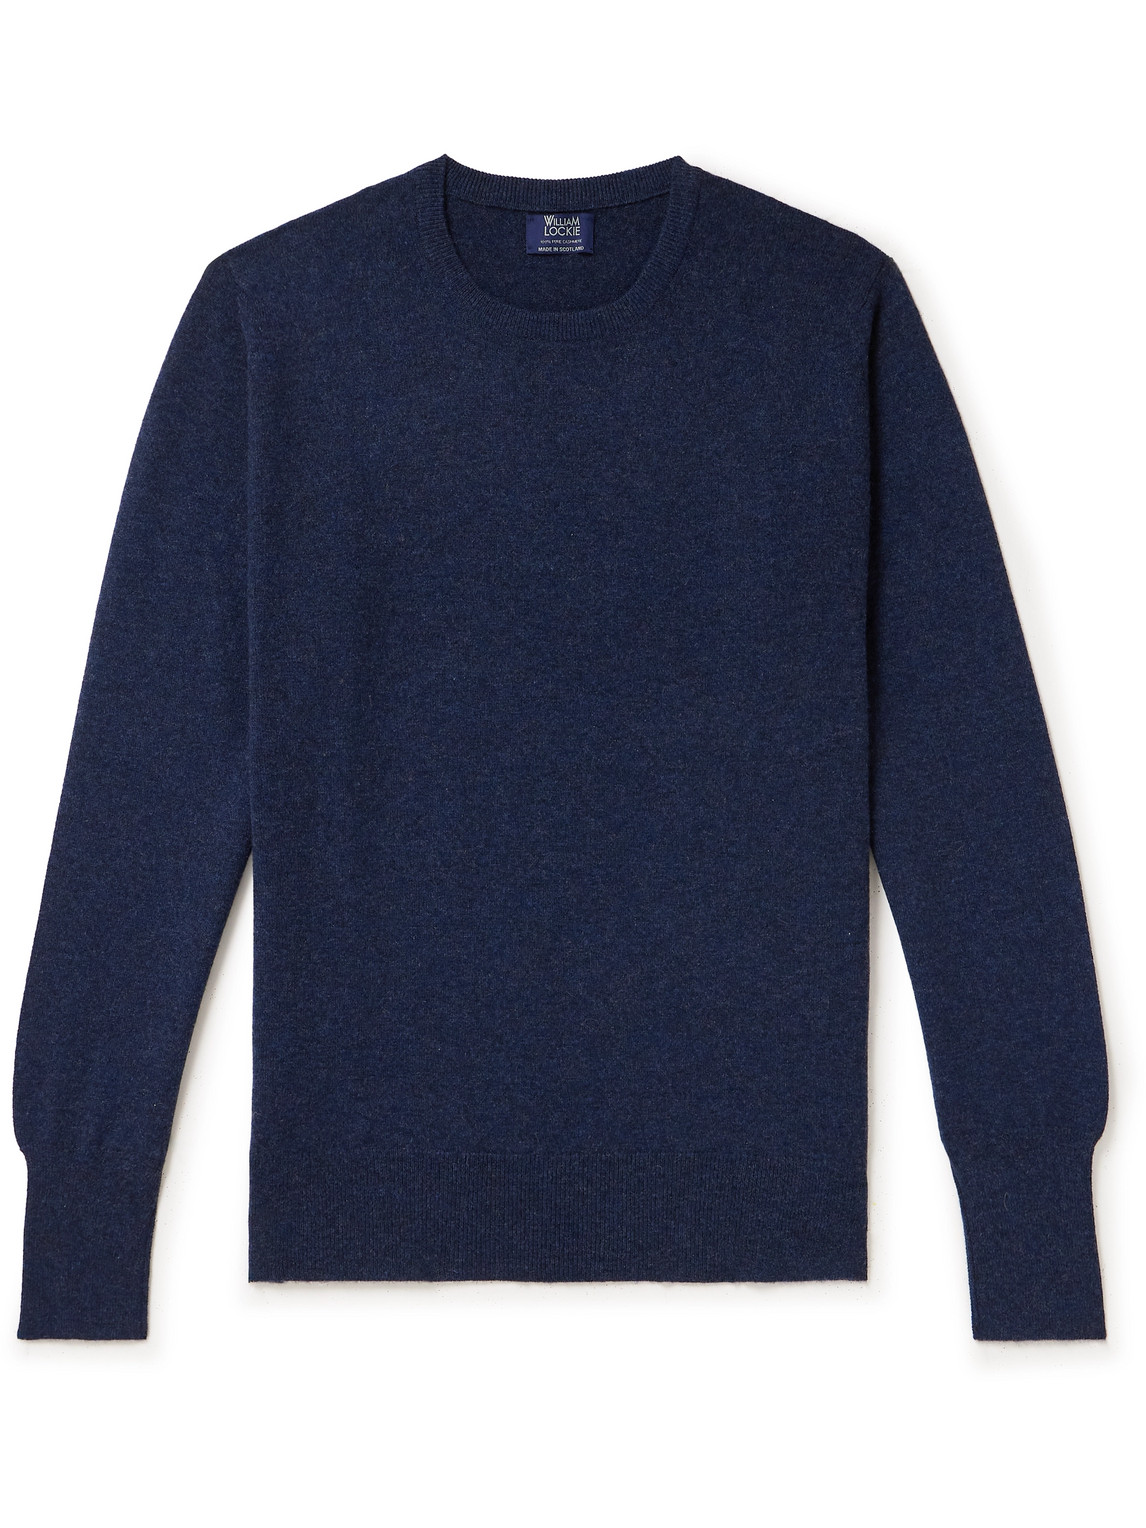 William Lockie Oxton Cashmere Sweater In Blue